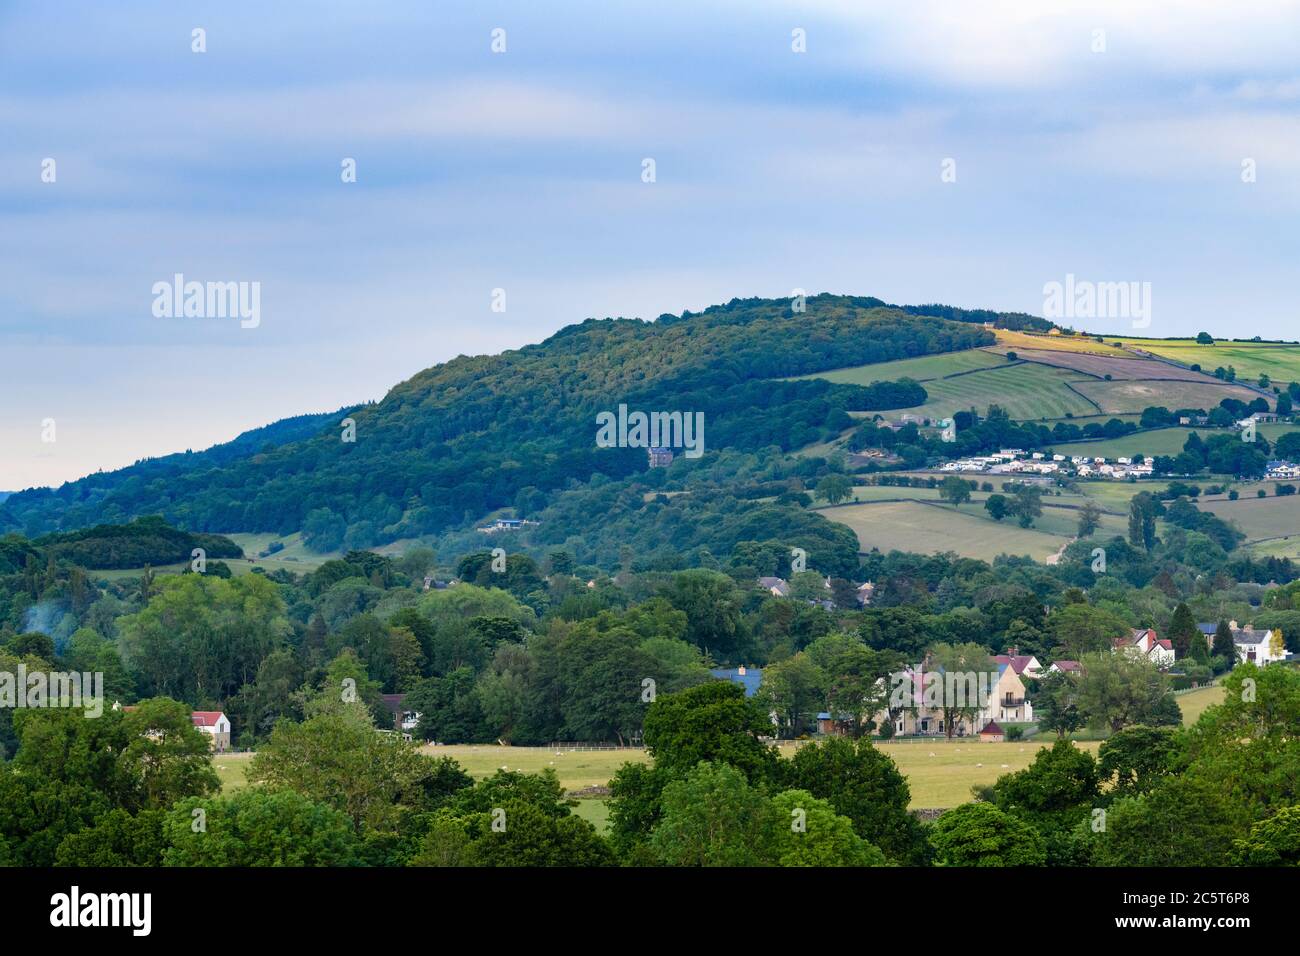 Alto punto di riferimento, cresta o scarpata, alberi di bosco su una collina e case nella valle panoramica - vista di Chevin Forest Park, Wharfedale, Inghilterra Regno Unito Foto Stock